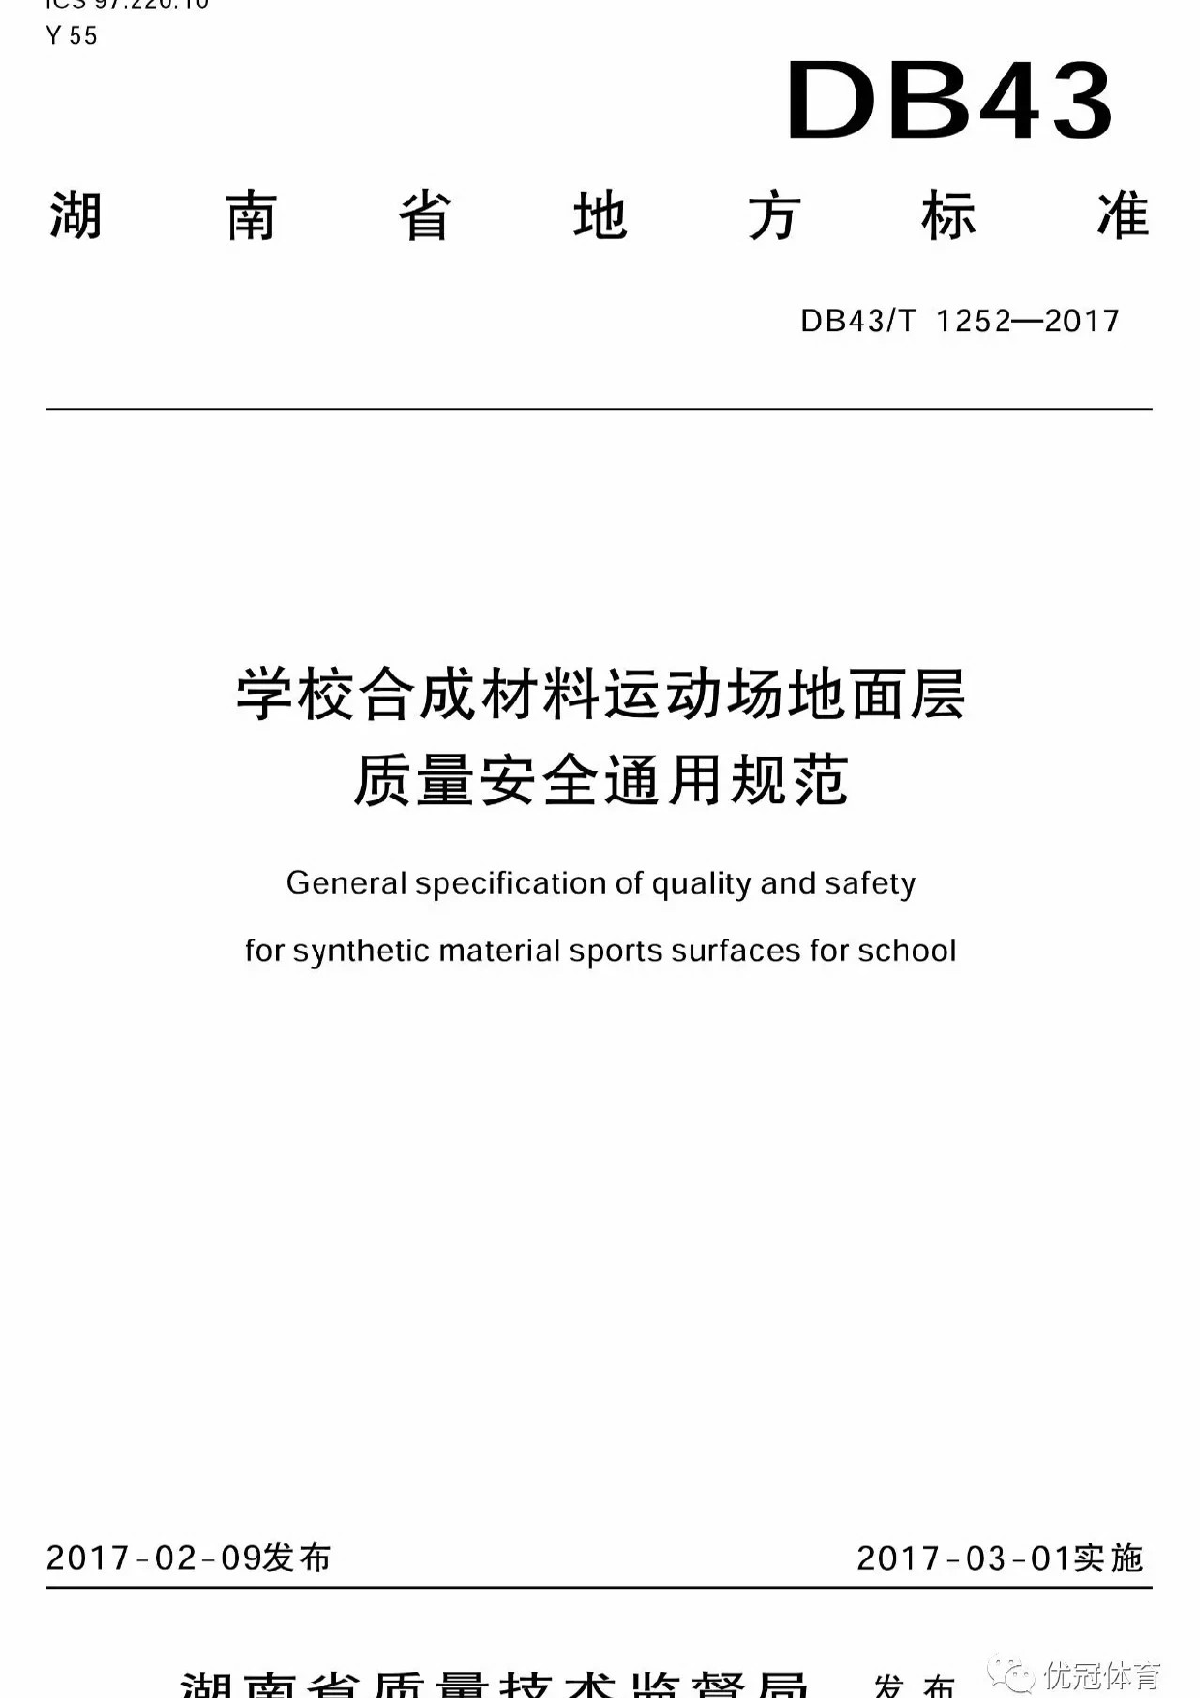 湖南地方标准DB43T1252-2017《学校合成材料运动场地面层质量安全通用规范》-图一